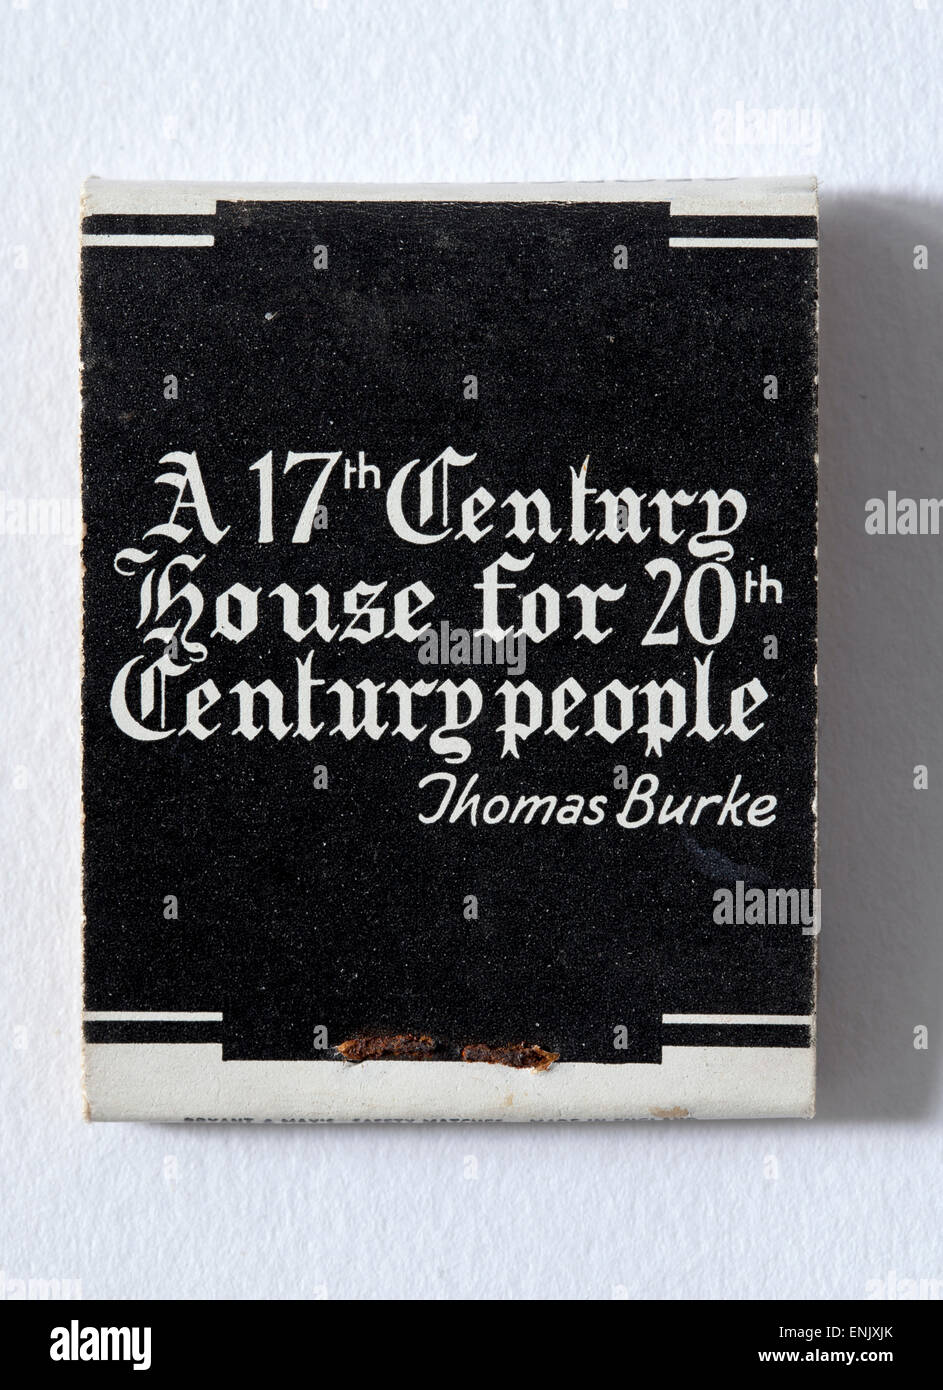 Vintage Caja de Cerillas publicidad Dove Public House en Hammersmith London con Thomas Burke cita sobre rearwith Bryant y coincidencias Foto de stock